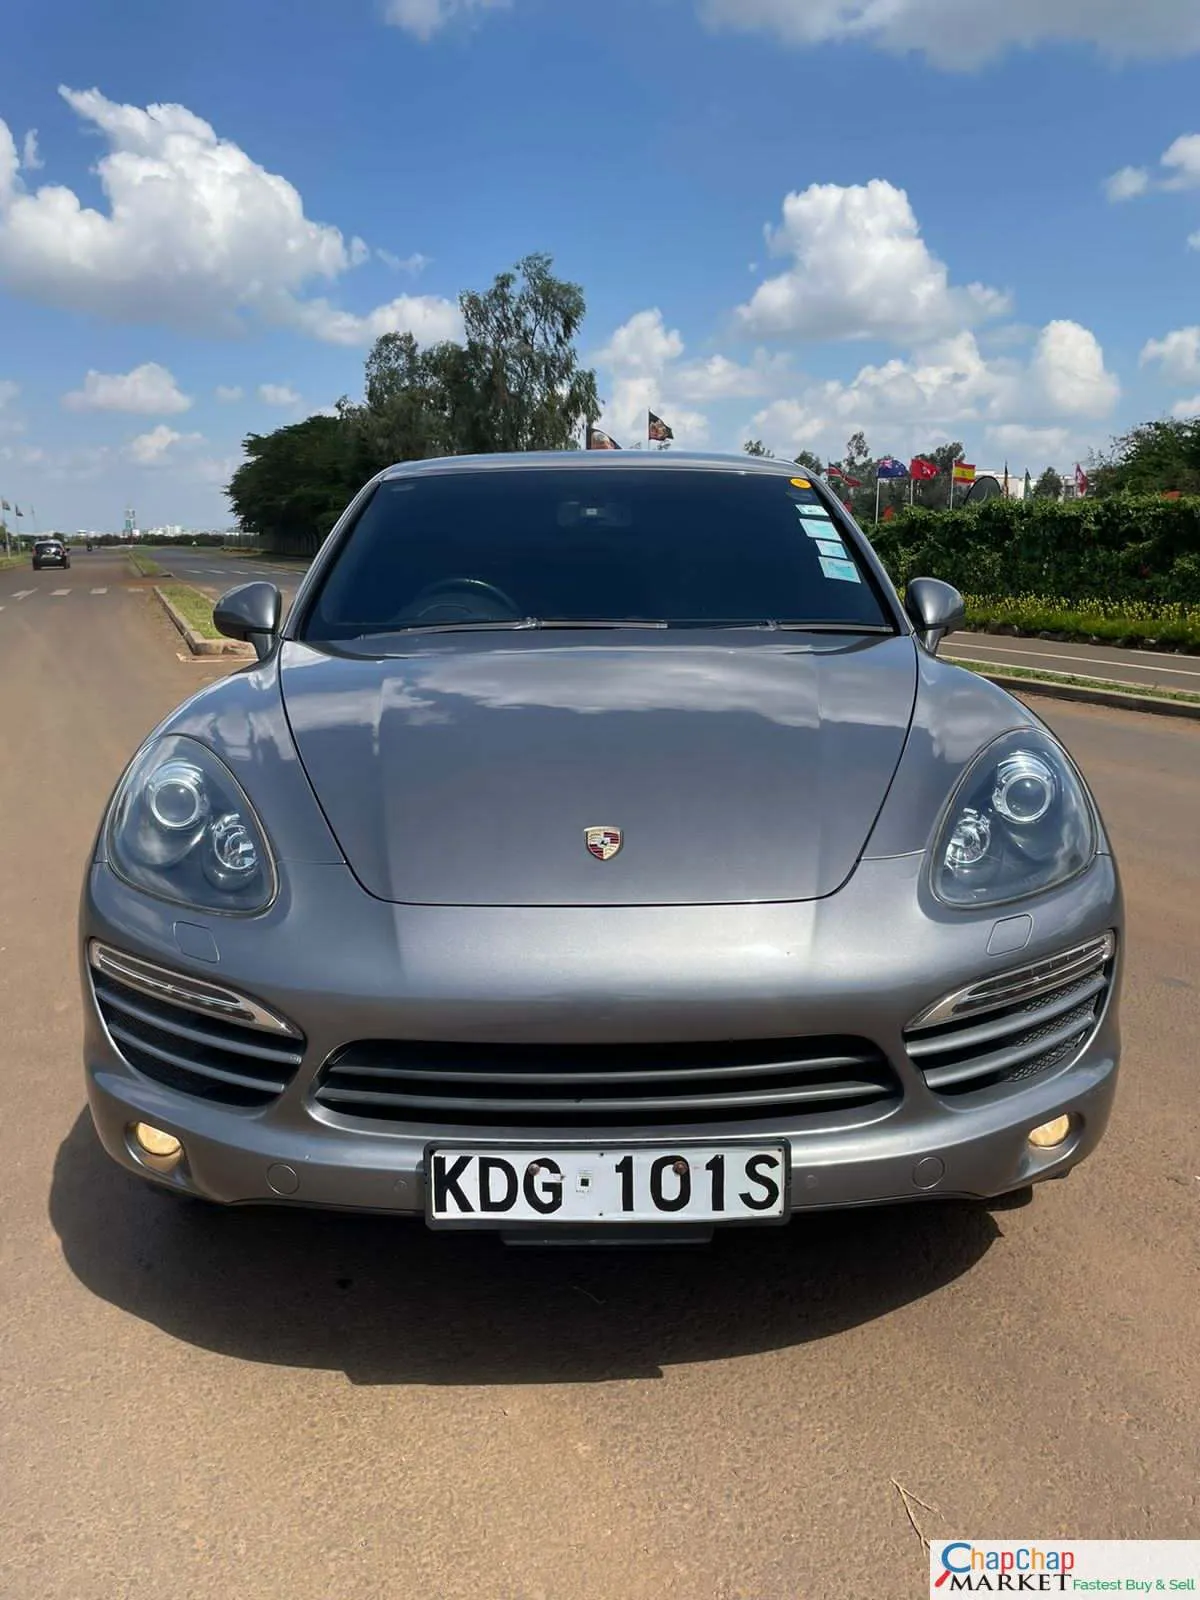 Porsche Cayenne Kenya PAY 40% DEPOSIT Trade in OK EXCLUSIVE Porsche Cayenne for sale in Kenya hire purchase installments